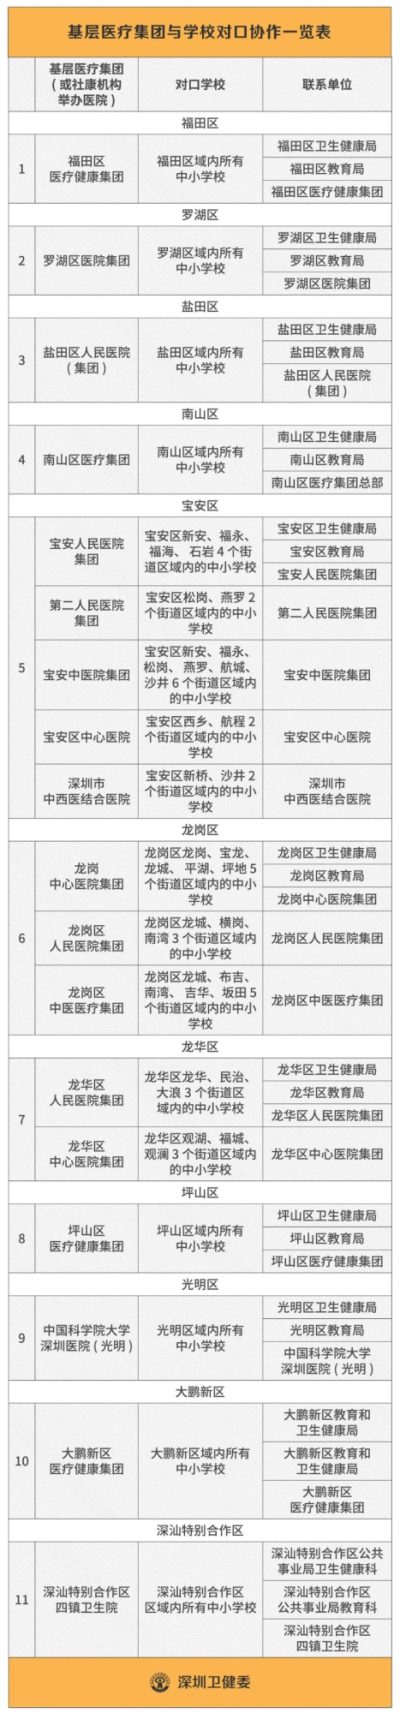 深圳感染新冠肺炎师生累计27人 密切接触学生者一律测核酸